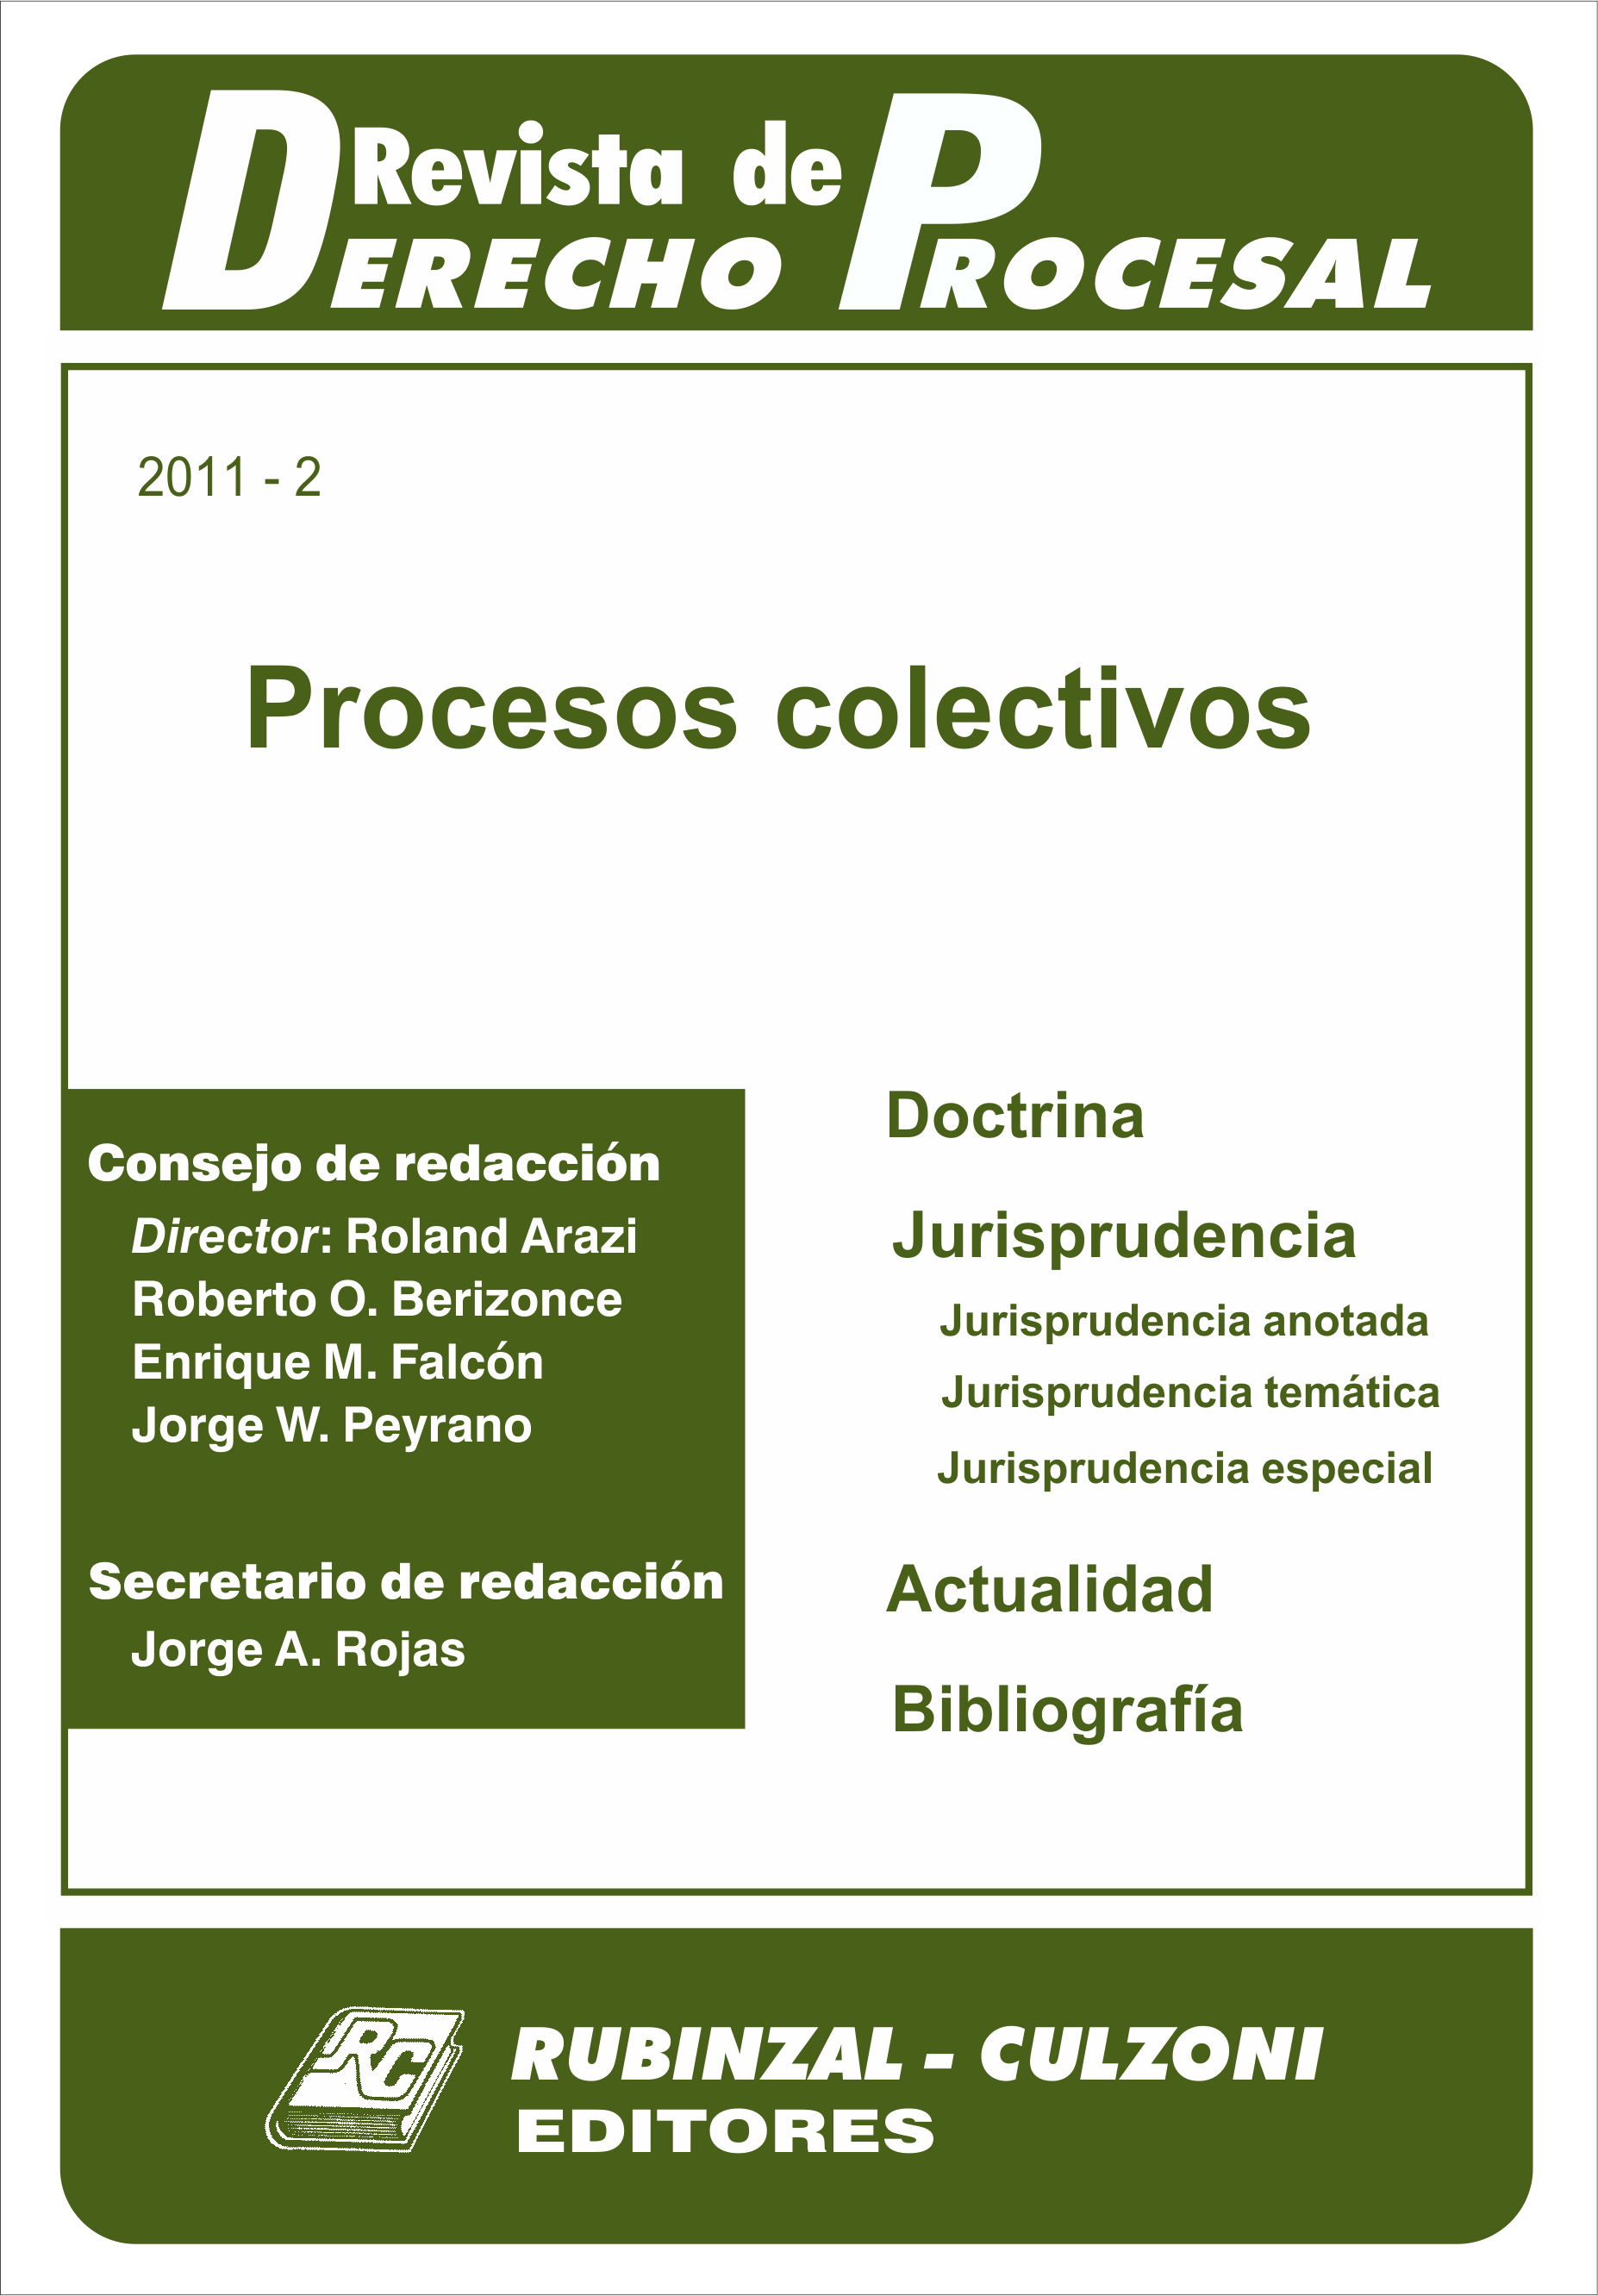 Revista de Derecho Procesal - Procesos colectivos